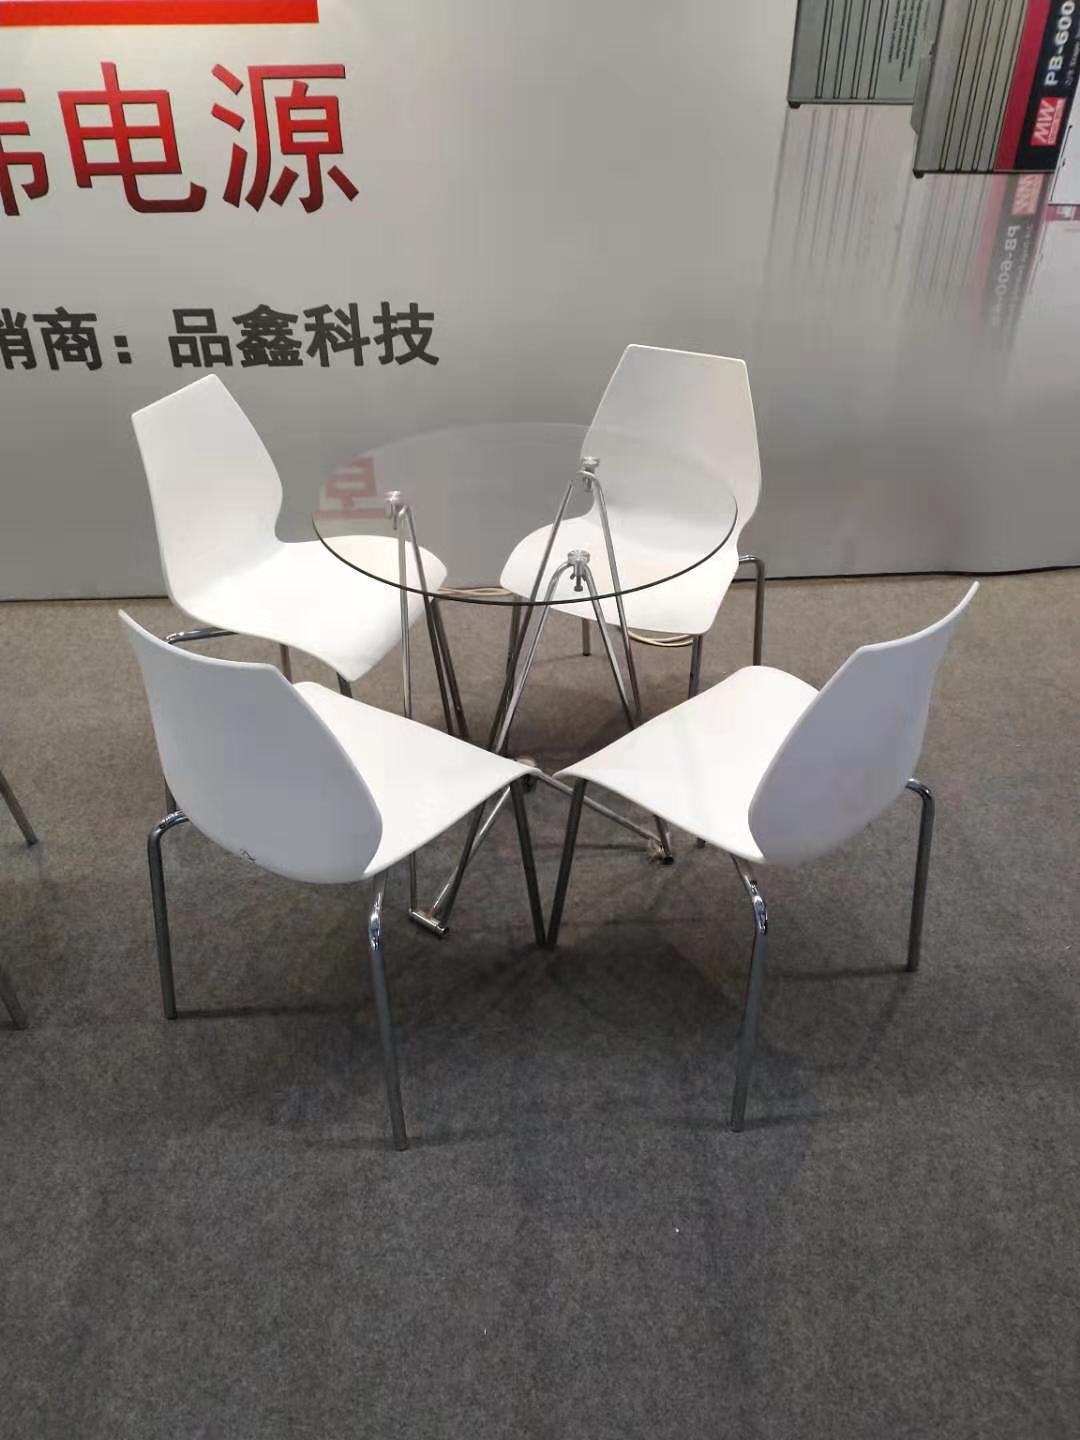 深圳會展中心桌椅設計